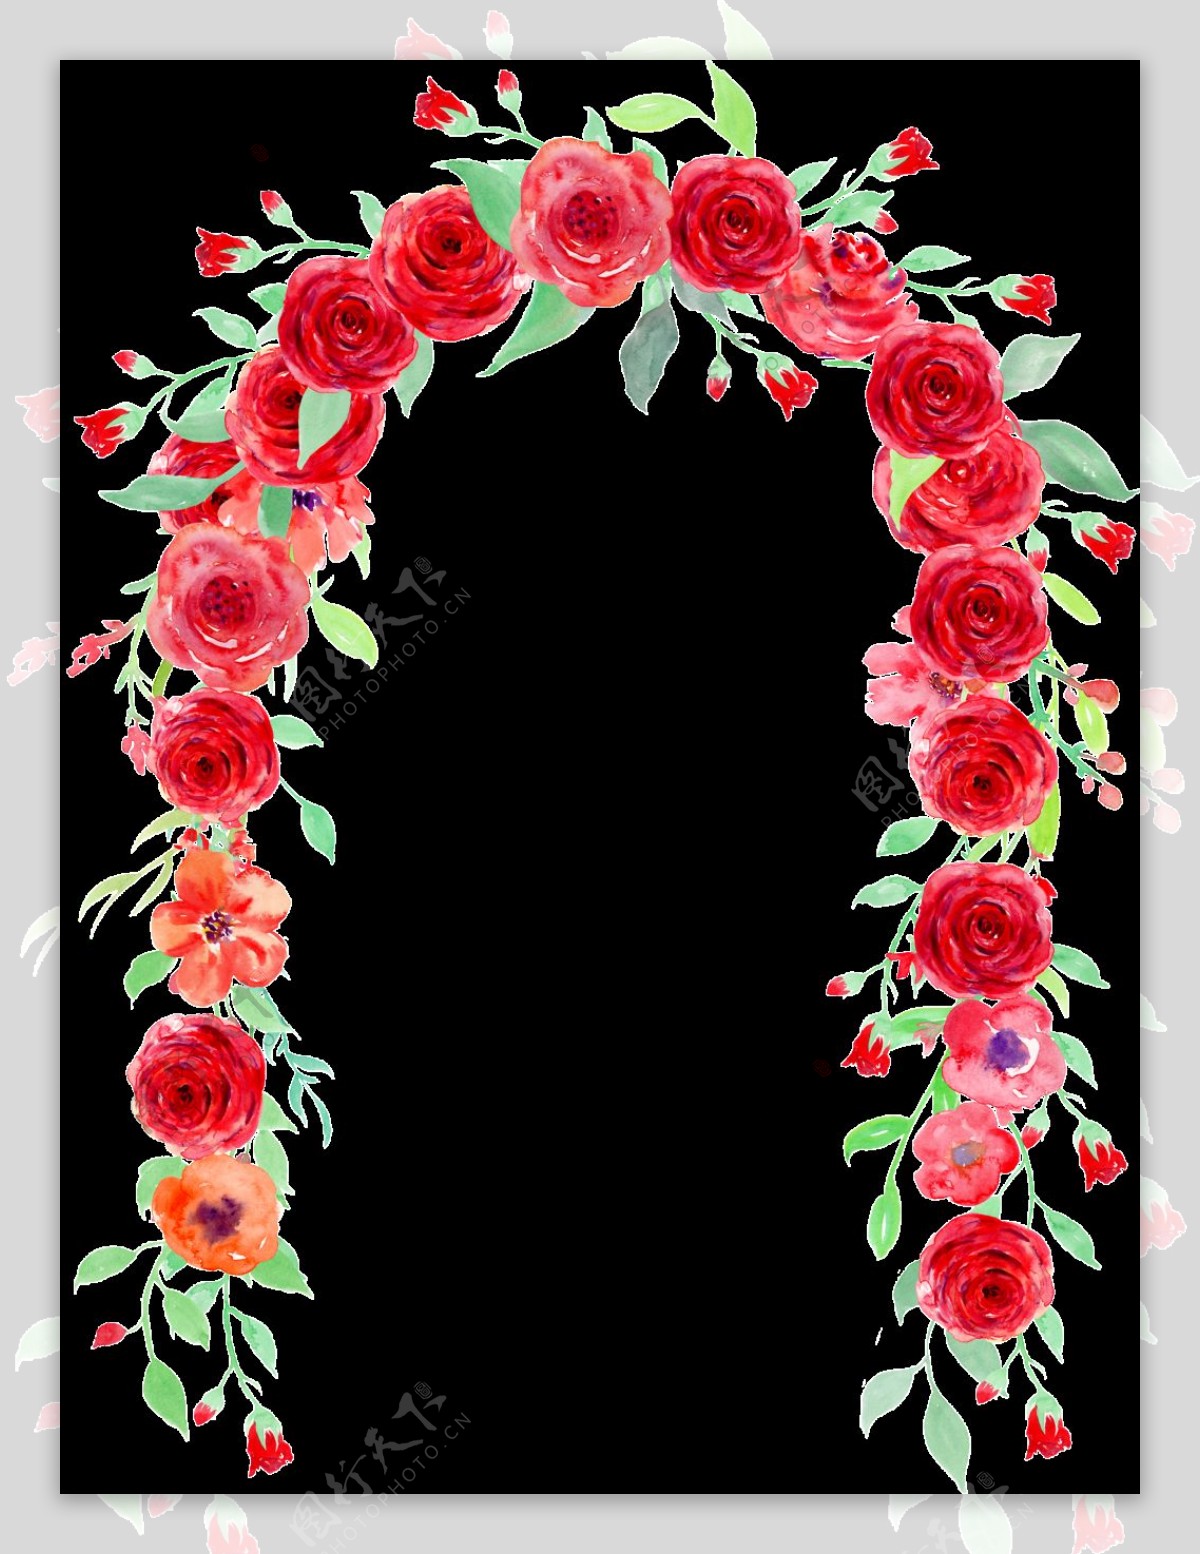 鲜花拱门价格_鲜花拱门哪个品牌好_什么牌子的鲜花拱门好-婚礼鲜花布置正品比价 - 挖东西